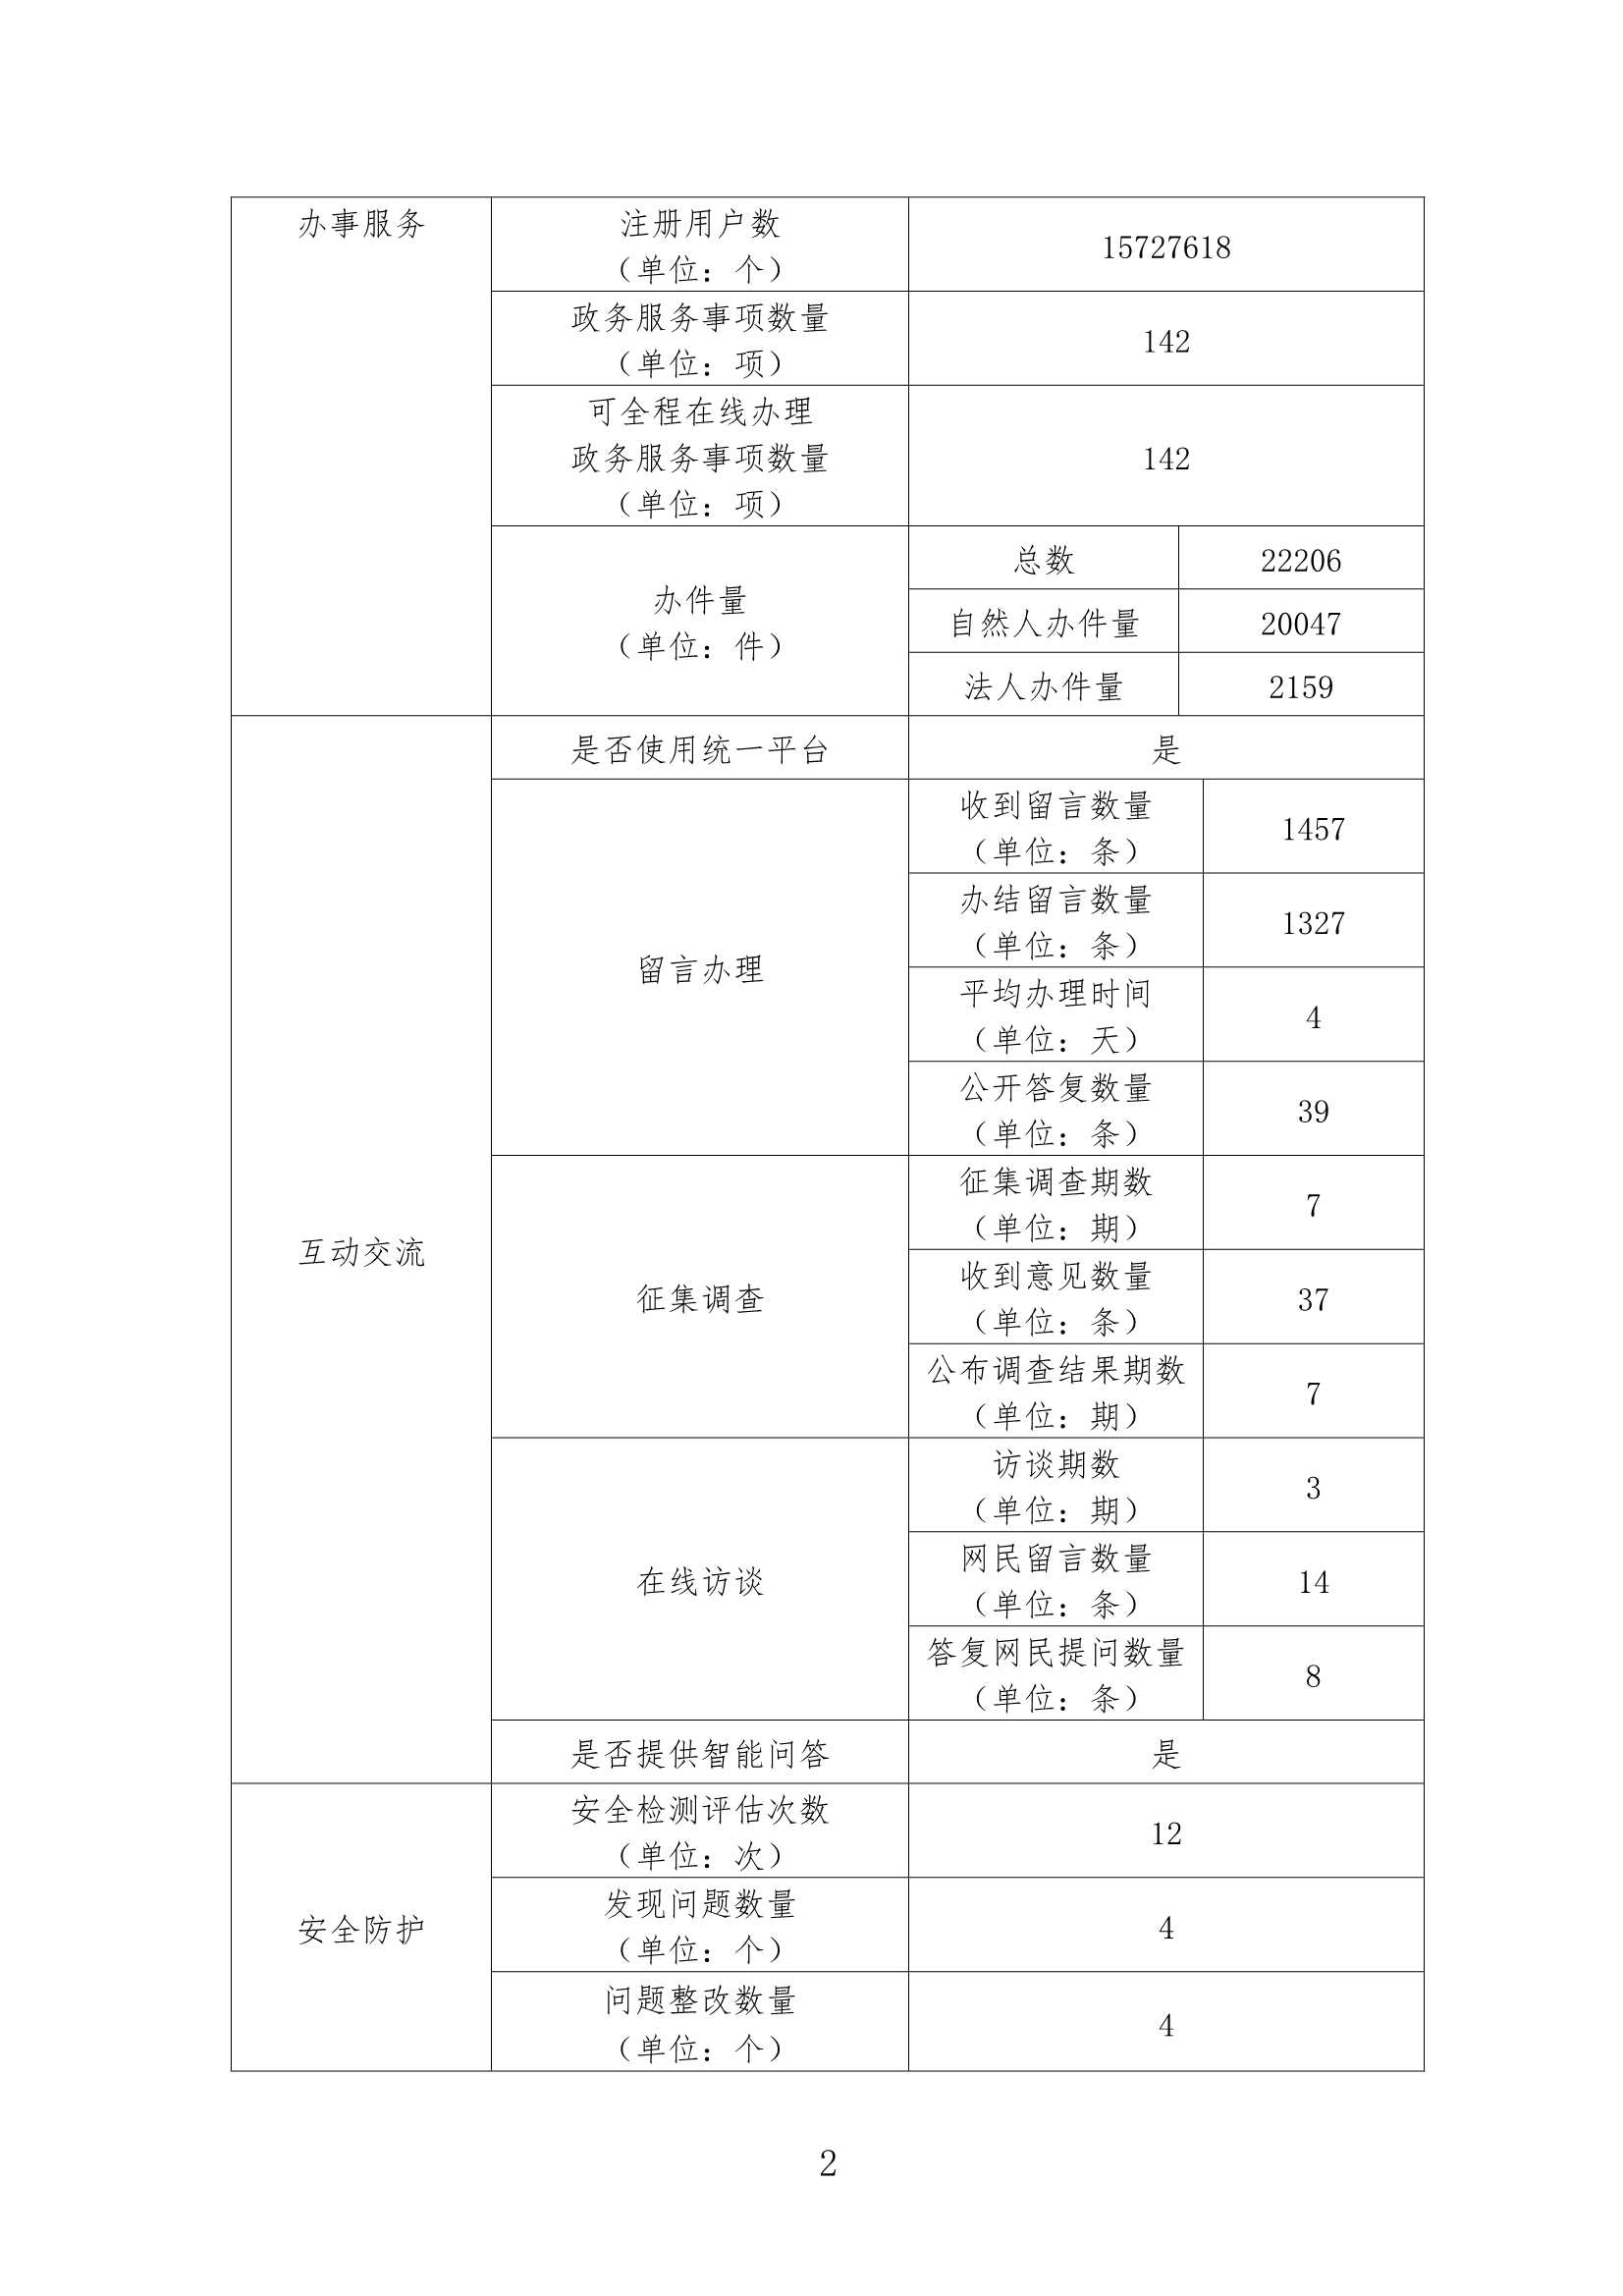 广州市卫生健康委员会政府网站年度工作报表（2020年度）_2.Jpeg